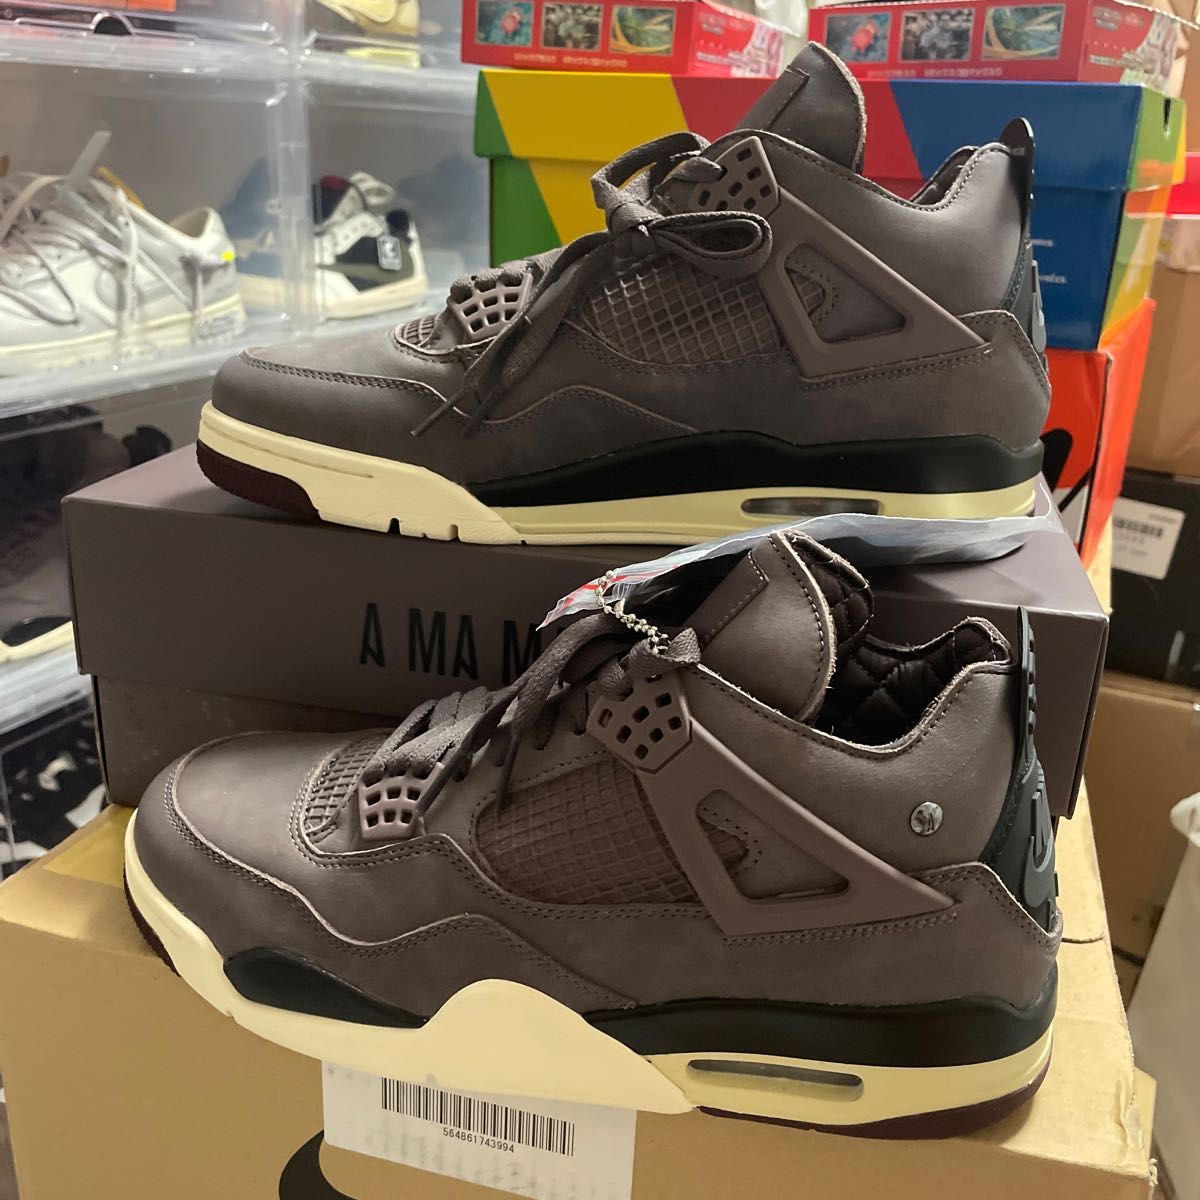 A Ma Manire × Nike Air Jordan 4 ア・マ・マニエール ナイキ エア